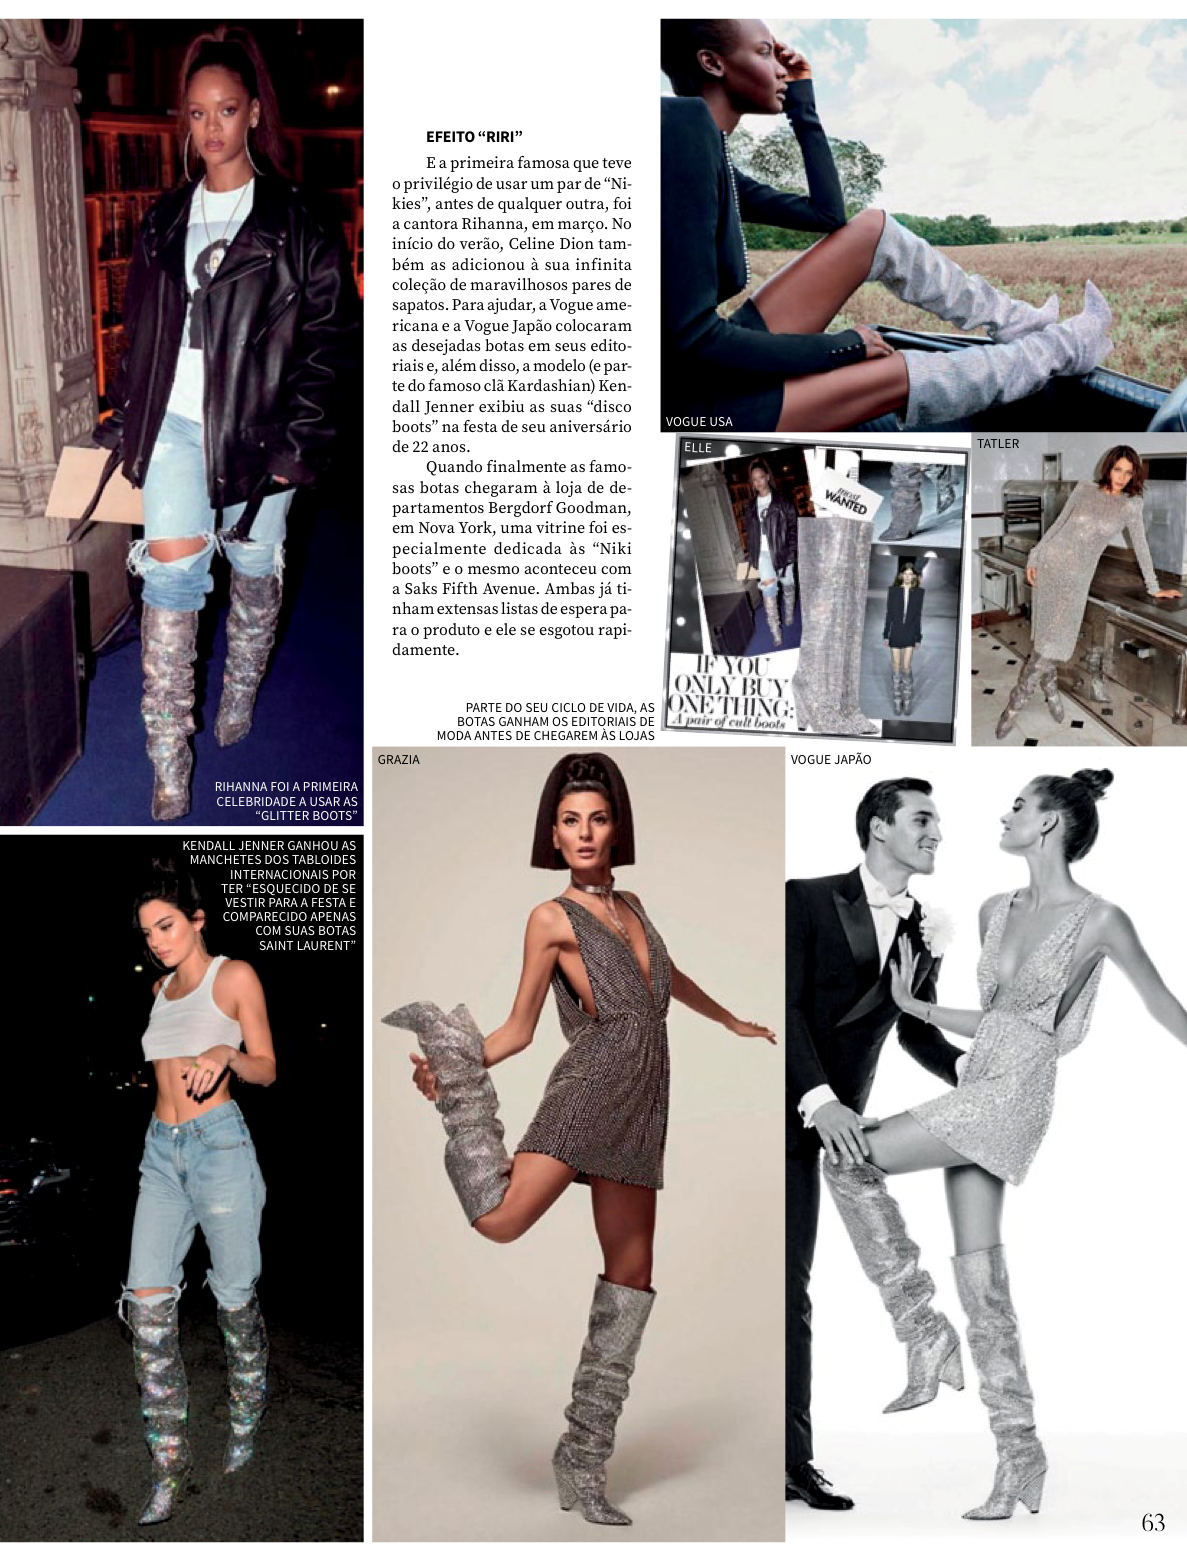 Parte do seu ciclo de vida, as botas Saint Laurent ganharam os editoriais de moda antes de chegarem às lojas